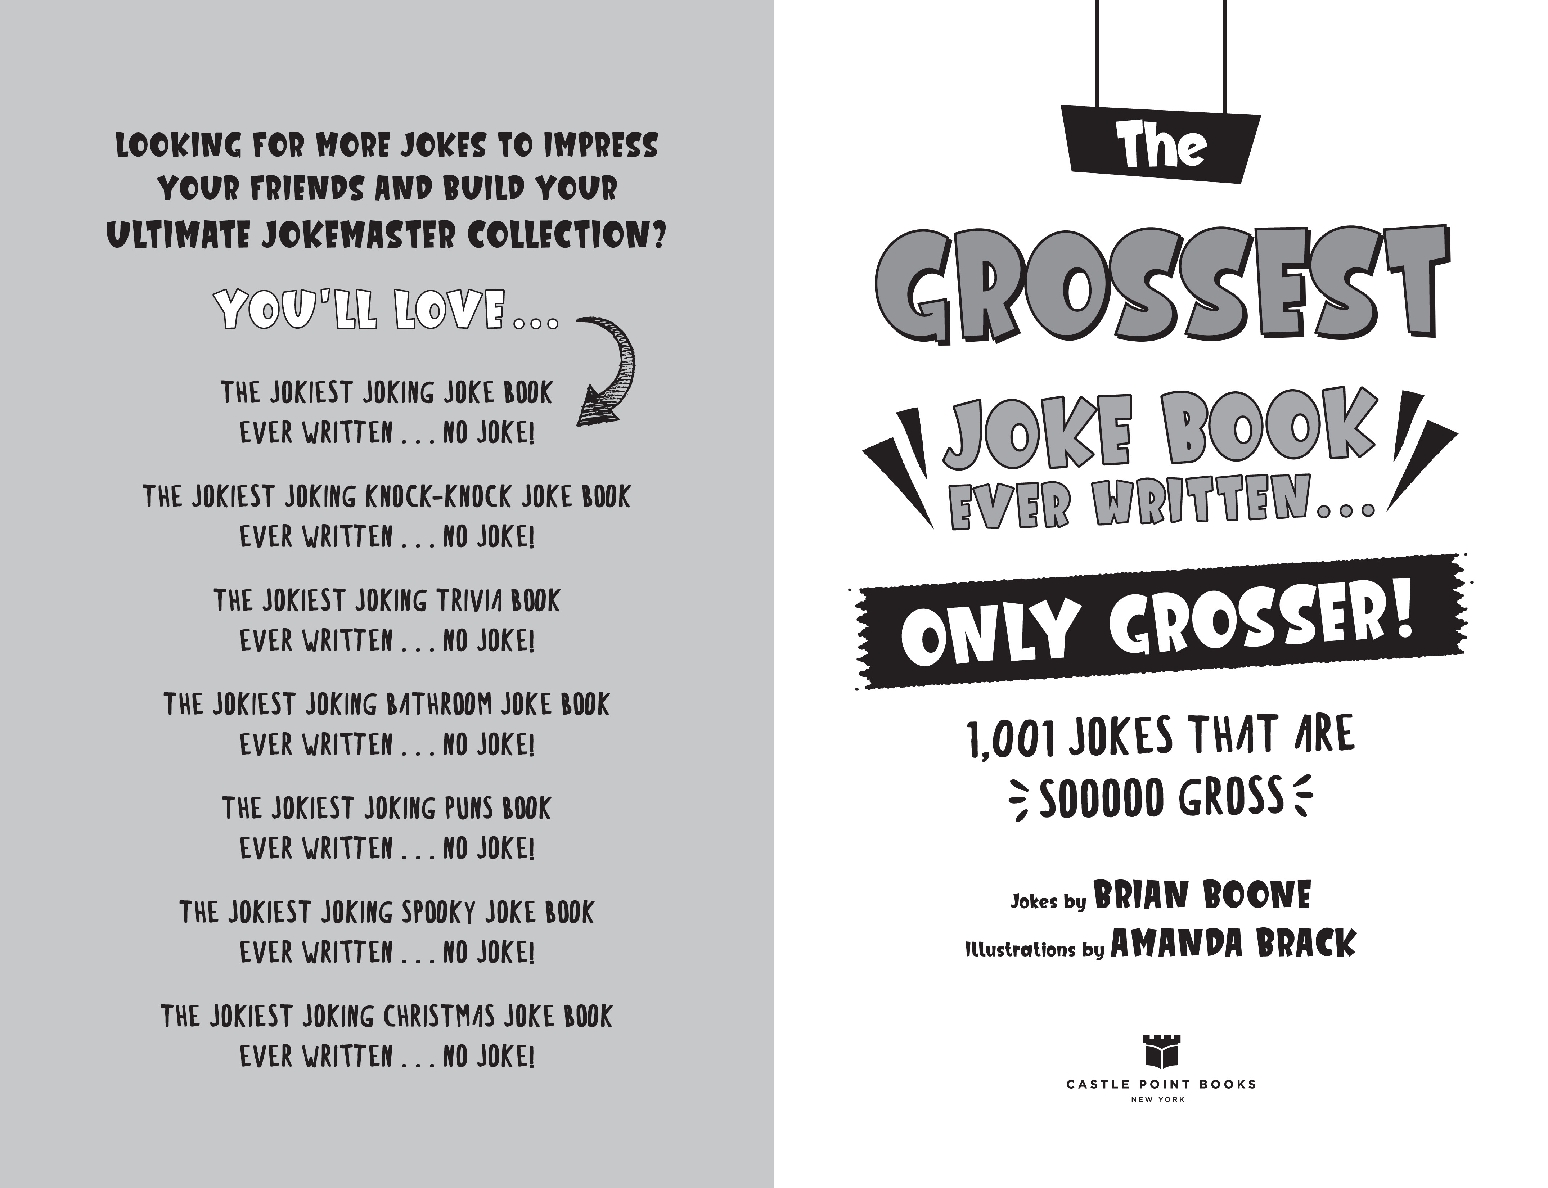 The Grossest Joke Book Ever Written. . .  Only Grosser!